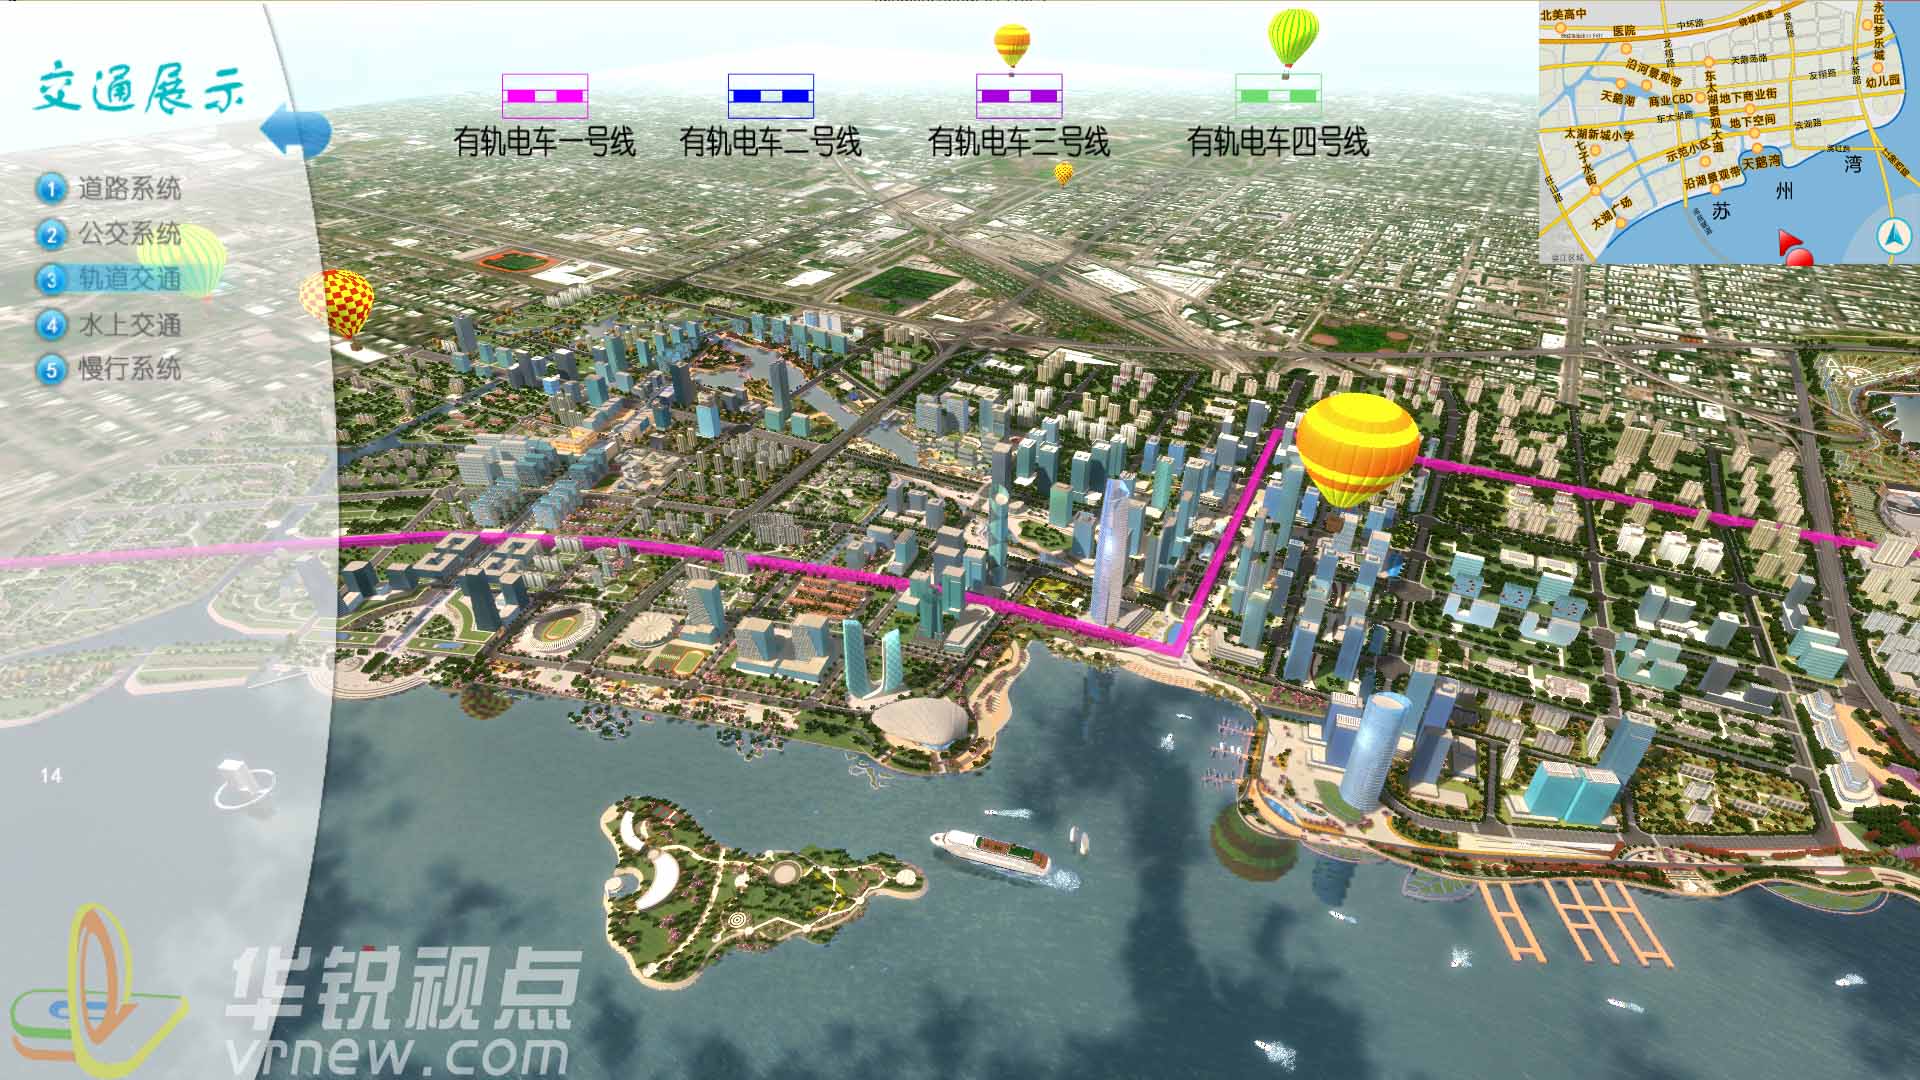 VR智慧城市展示系统